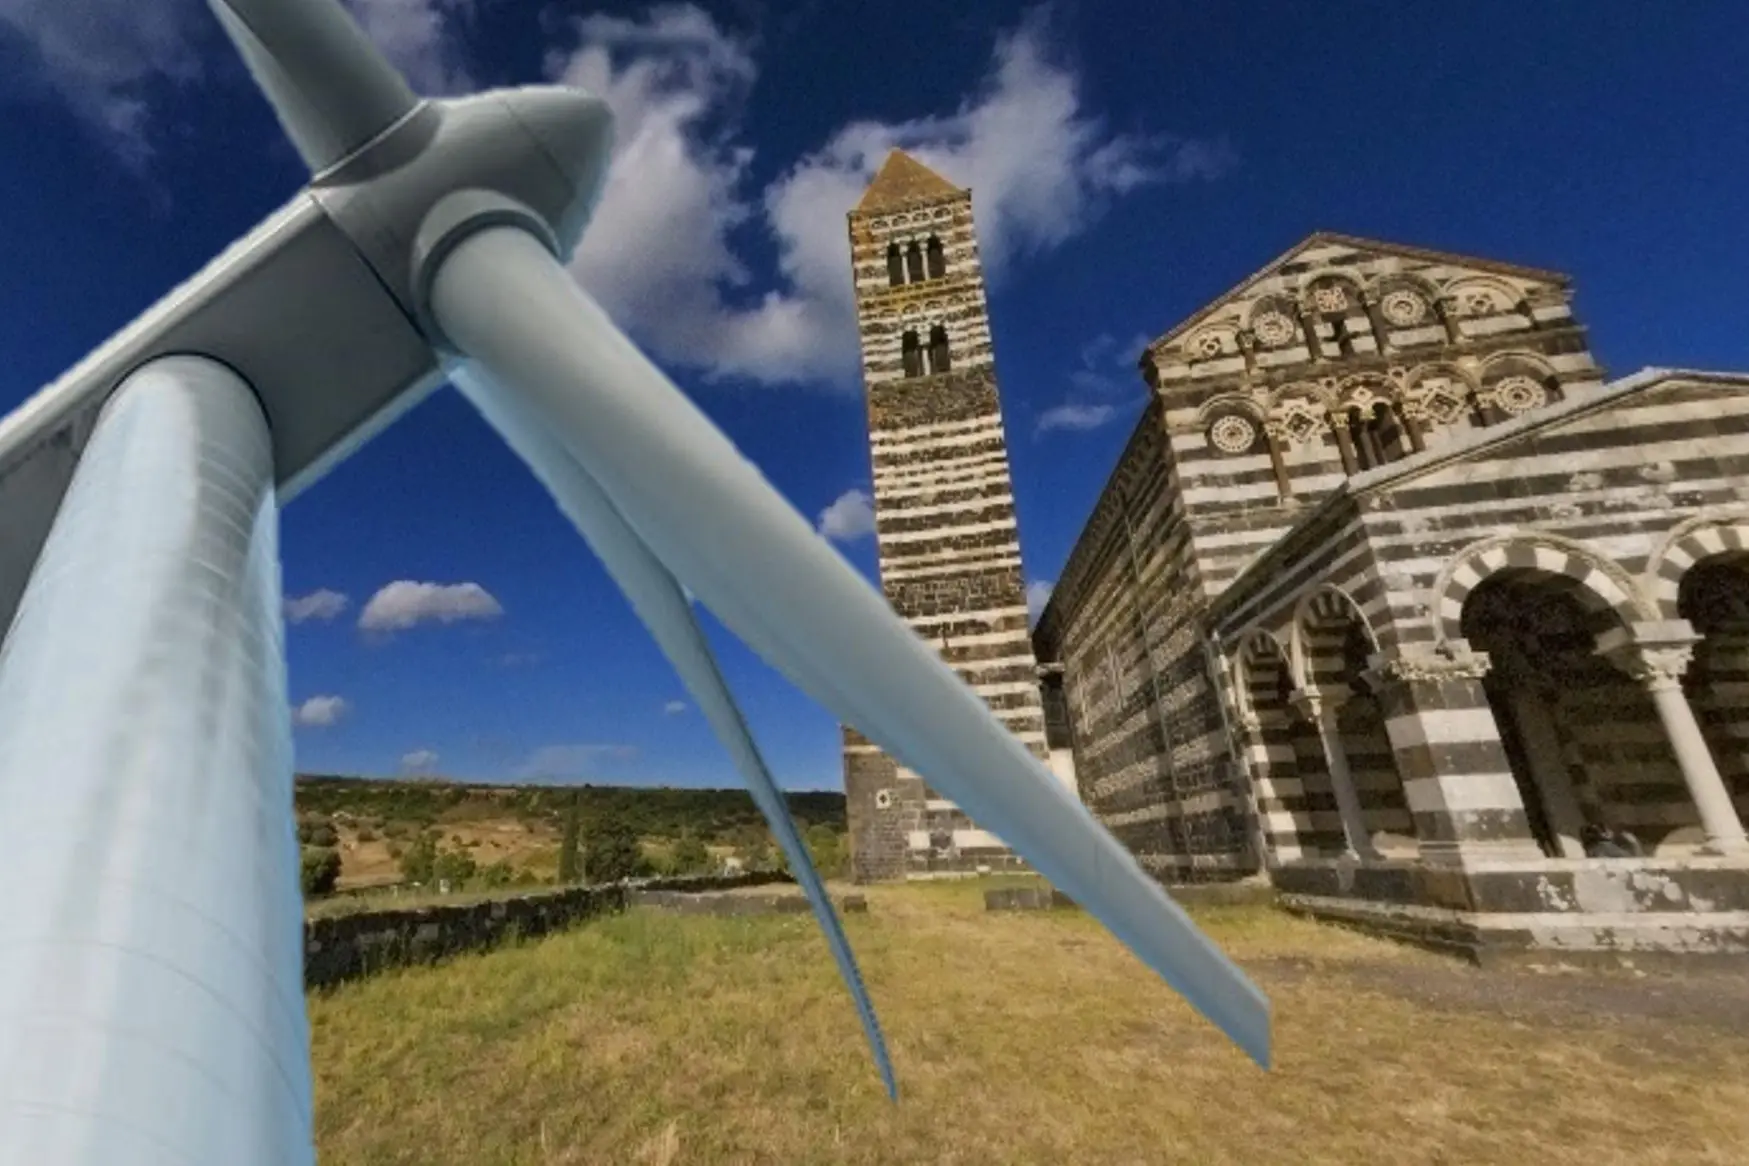 La basilica di Saccargia minacciata dalle pale eoliche